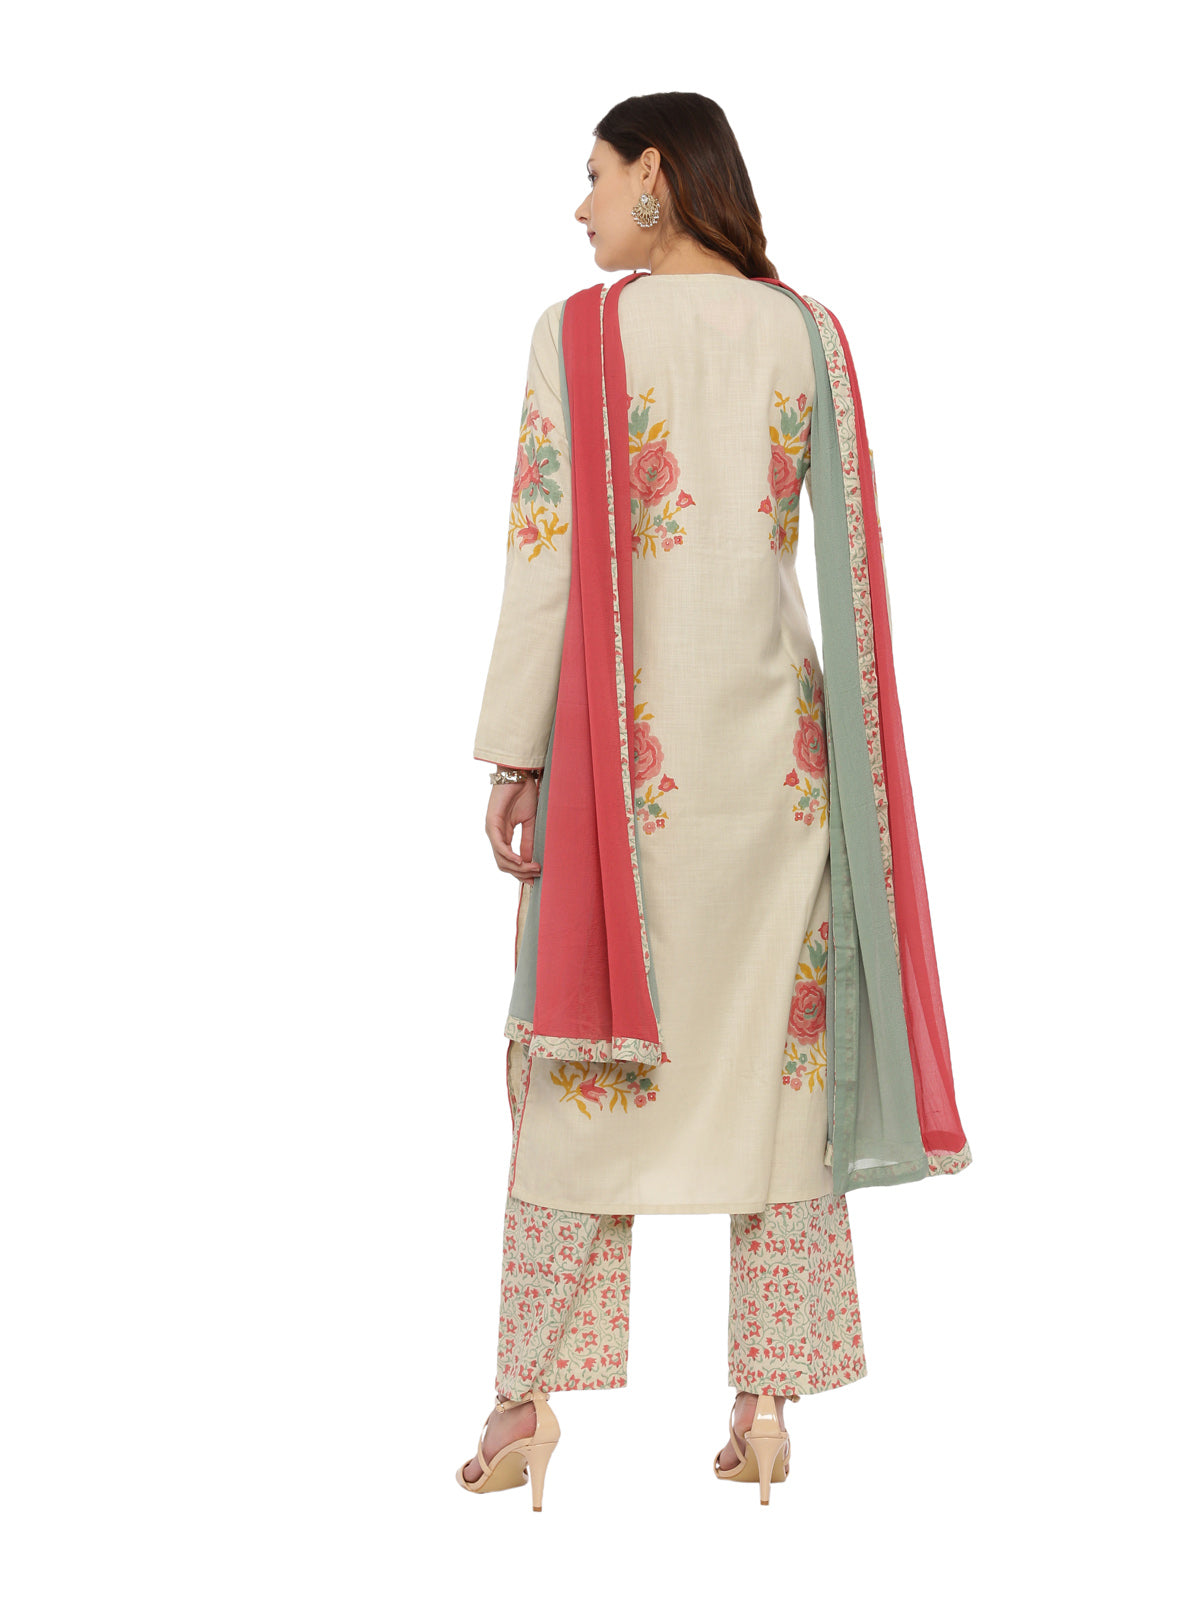 Neeru's Beige Color Handloom Fabric Full Sleeves Suit-Pant